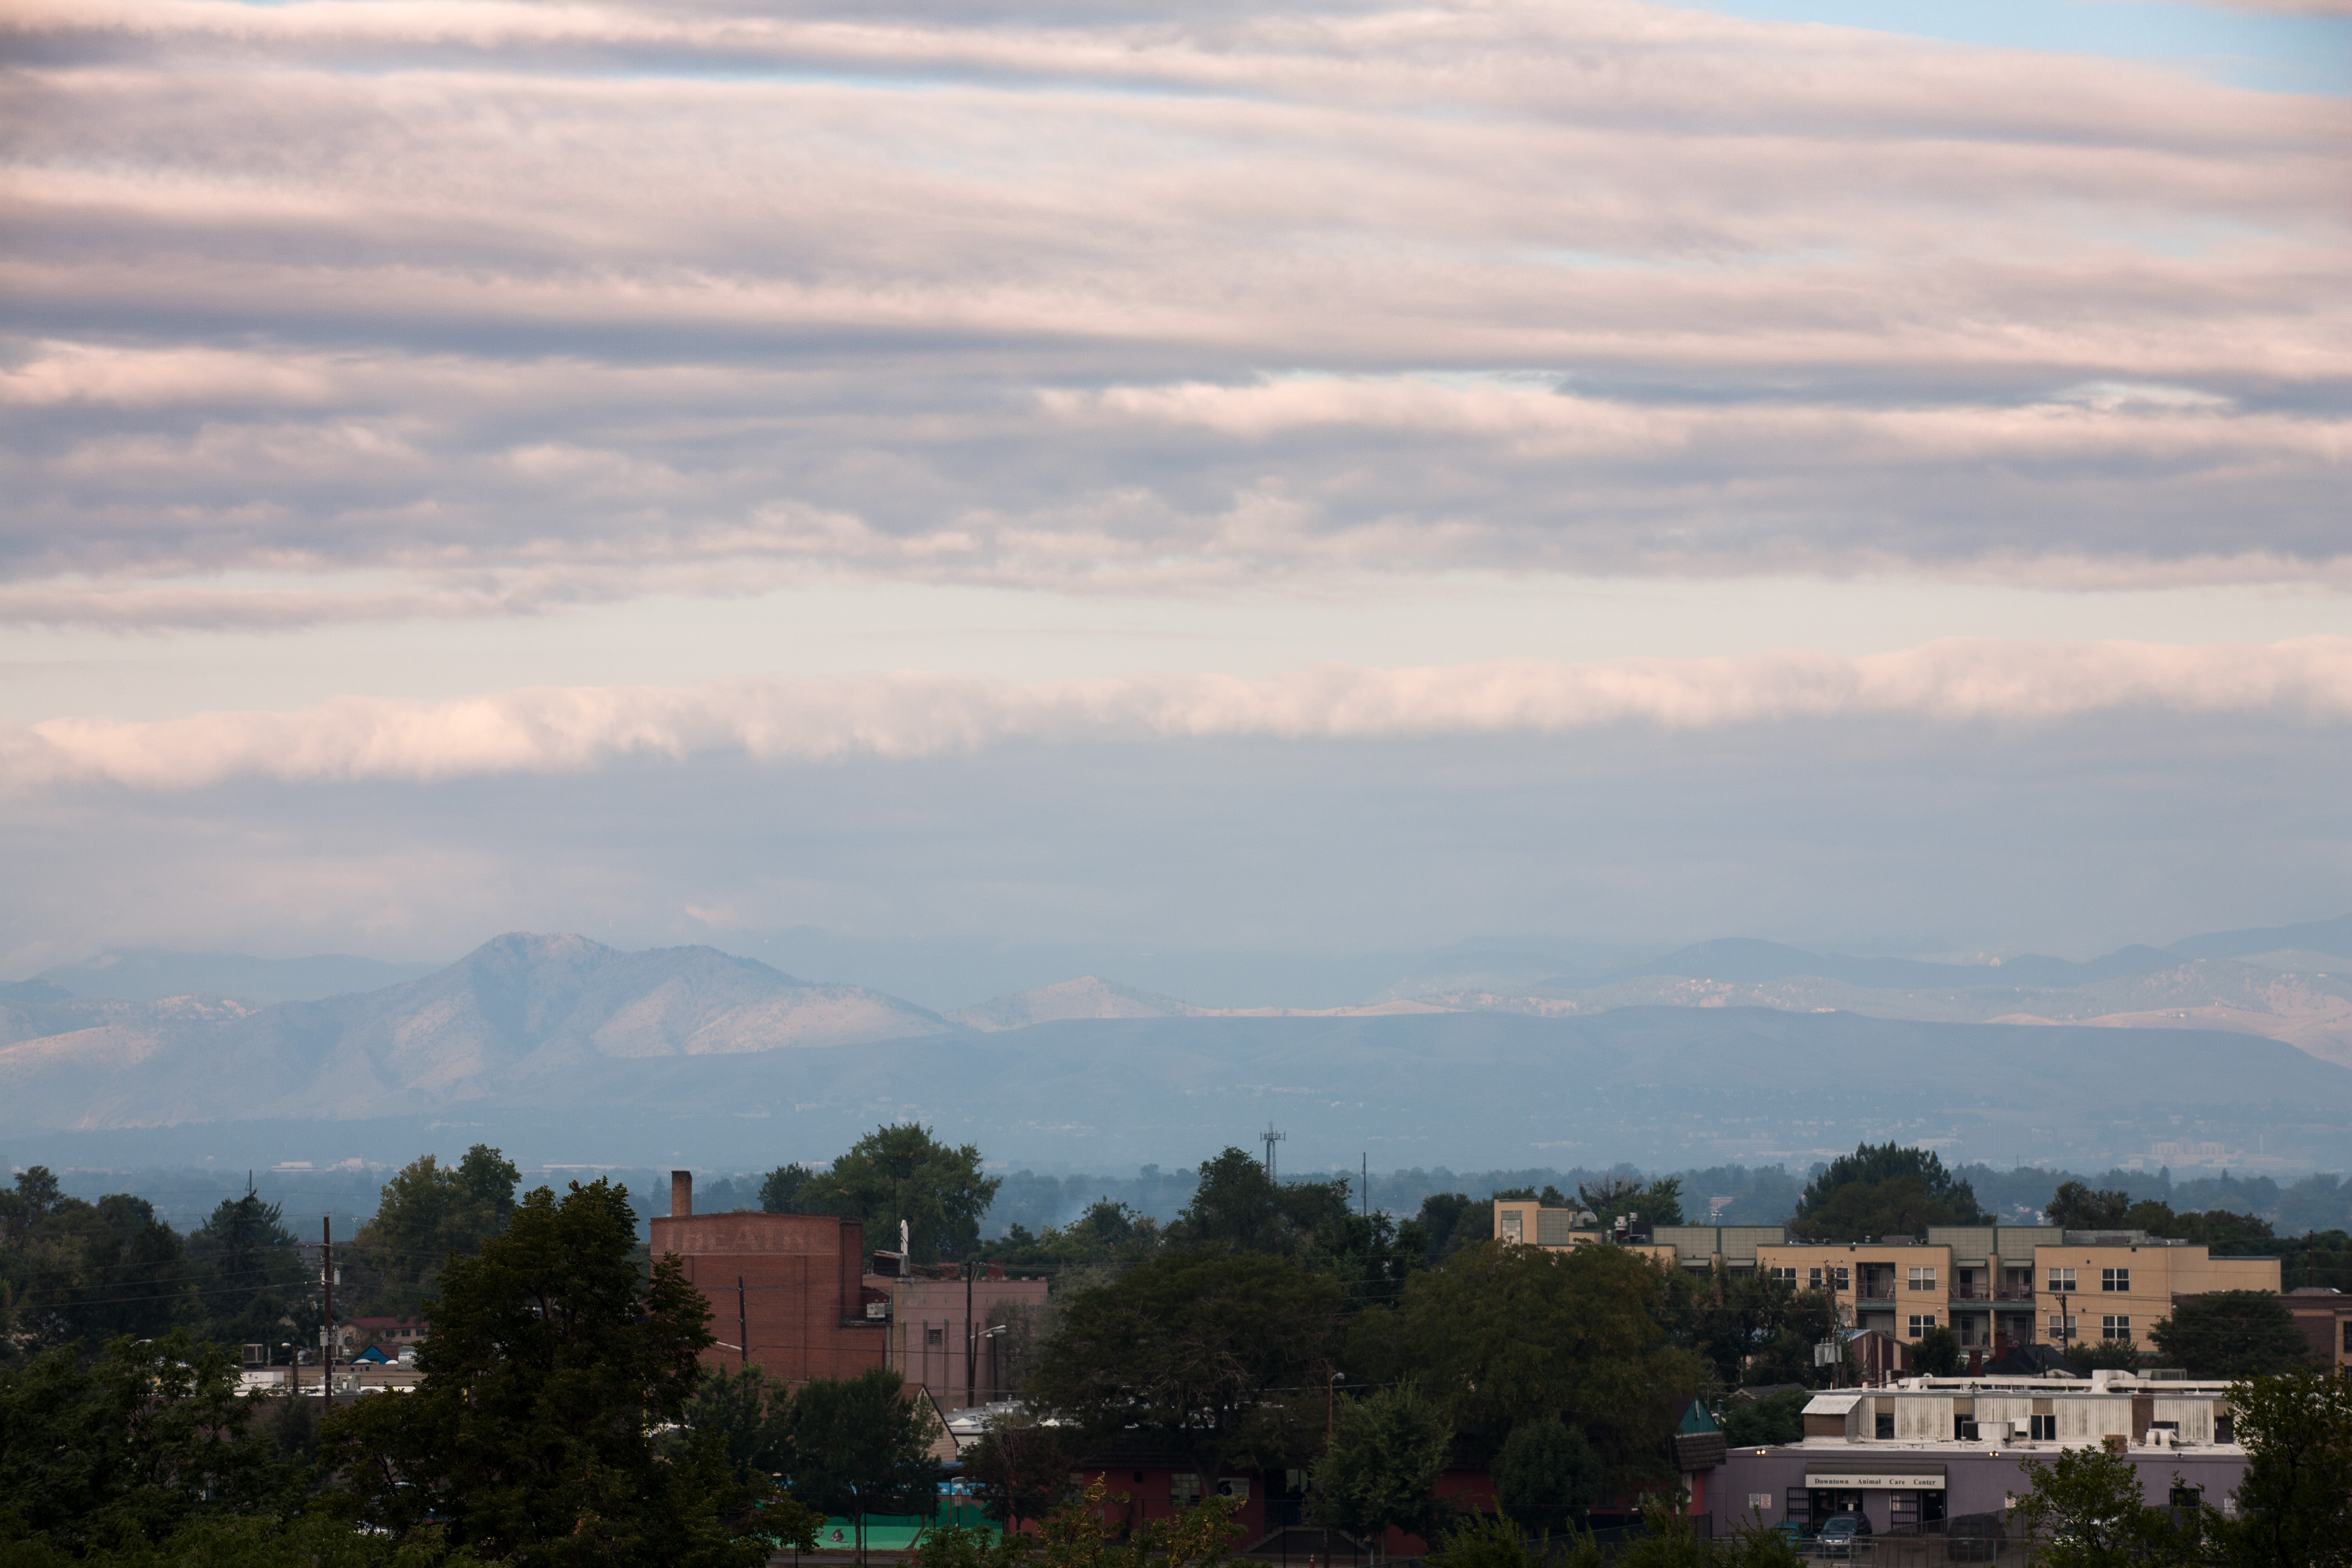 Mount Evans sunrise - September 8, 2011